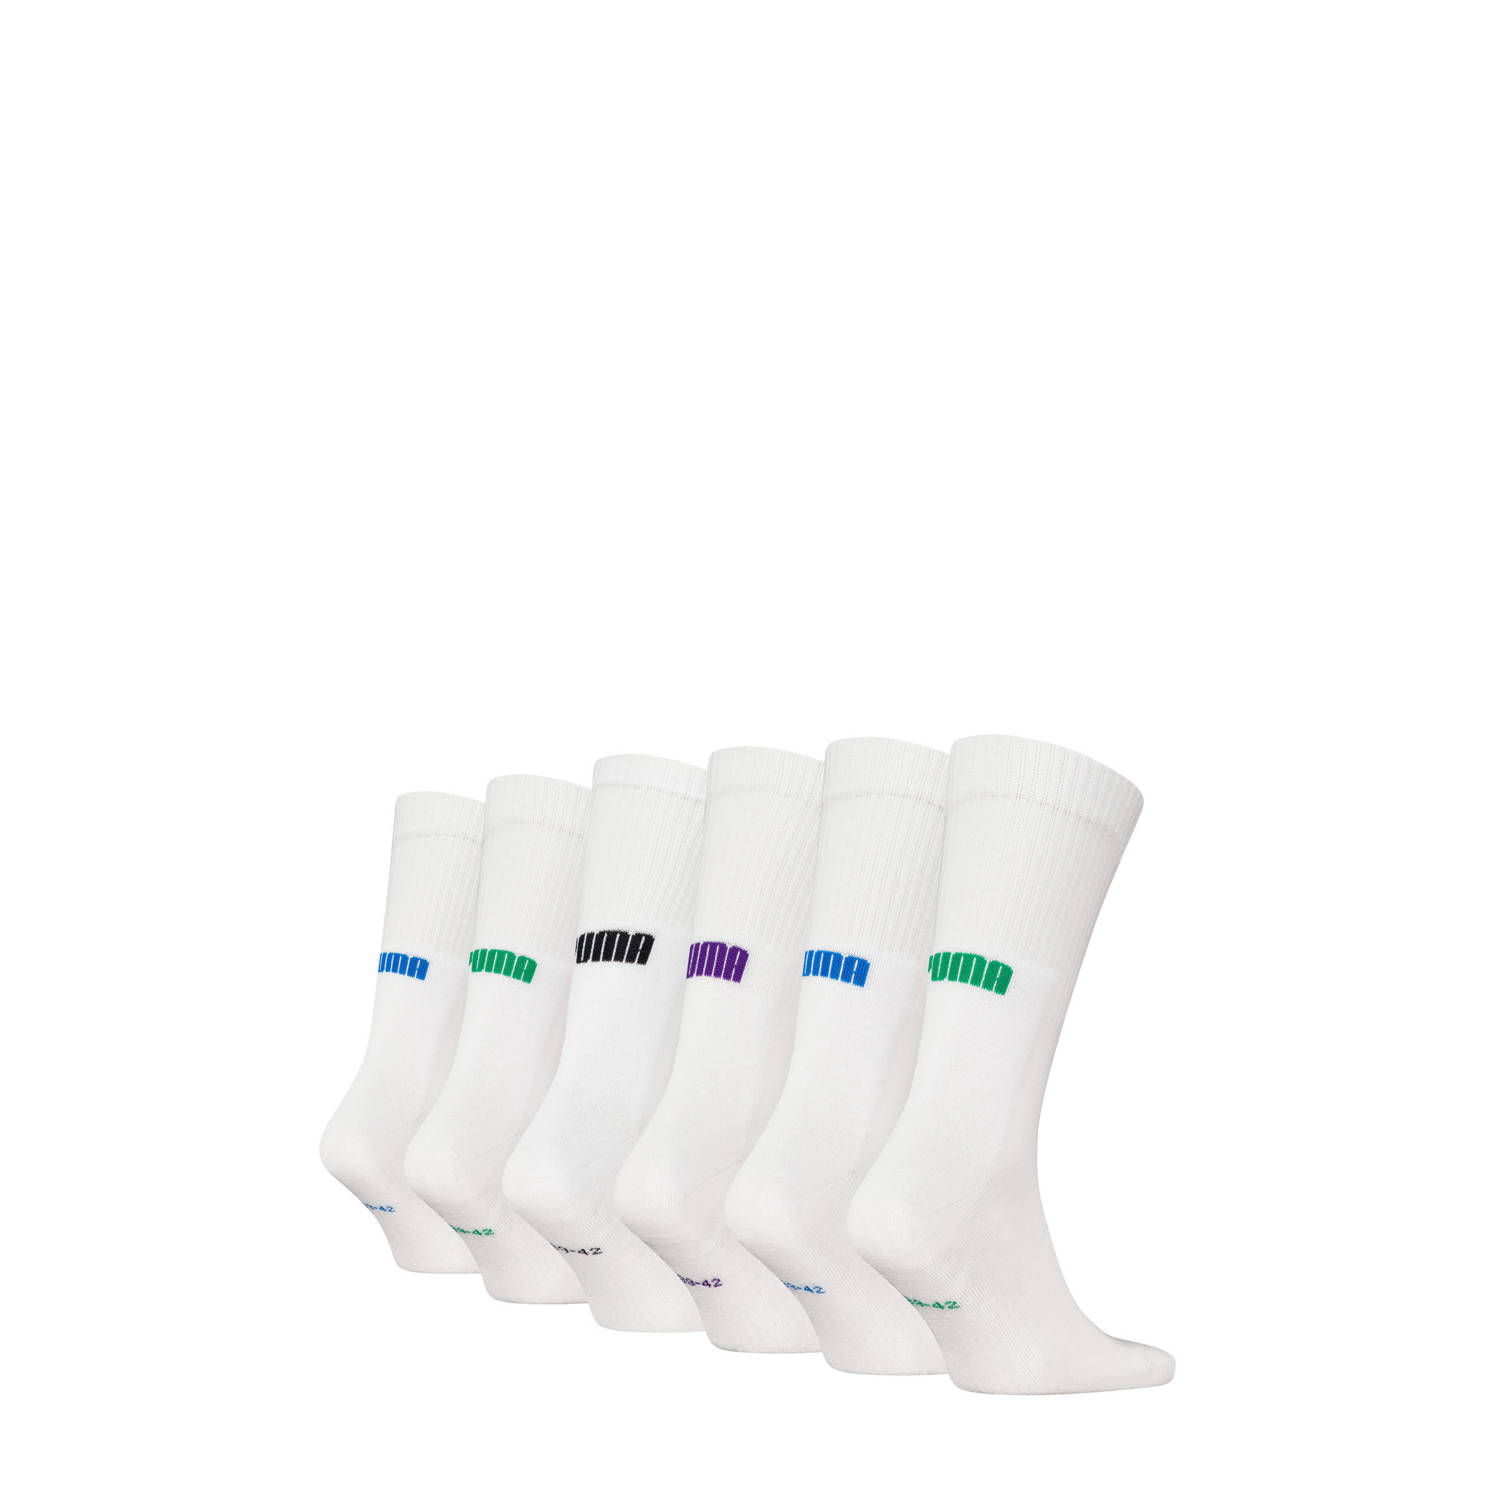 Puma sokken set van 6 wit